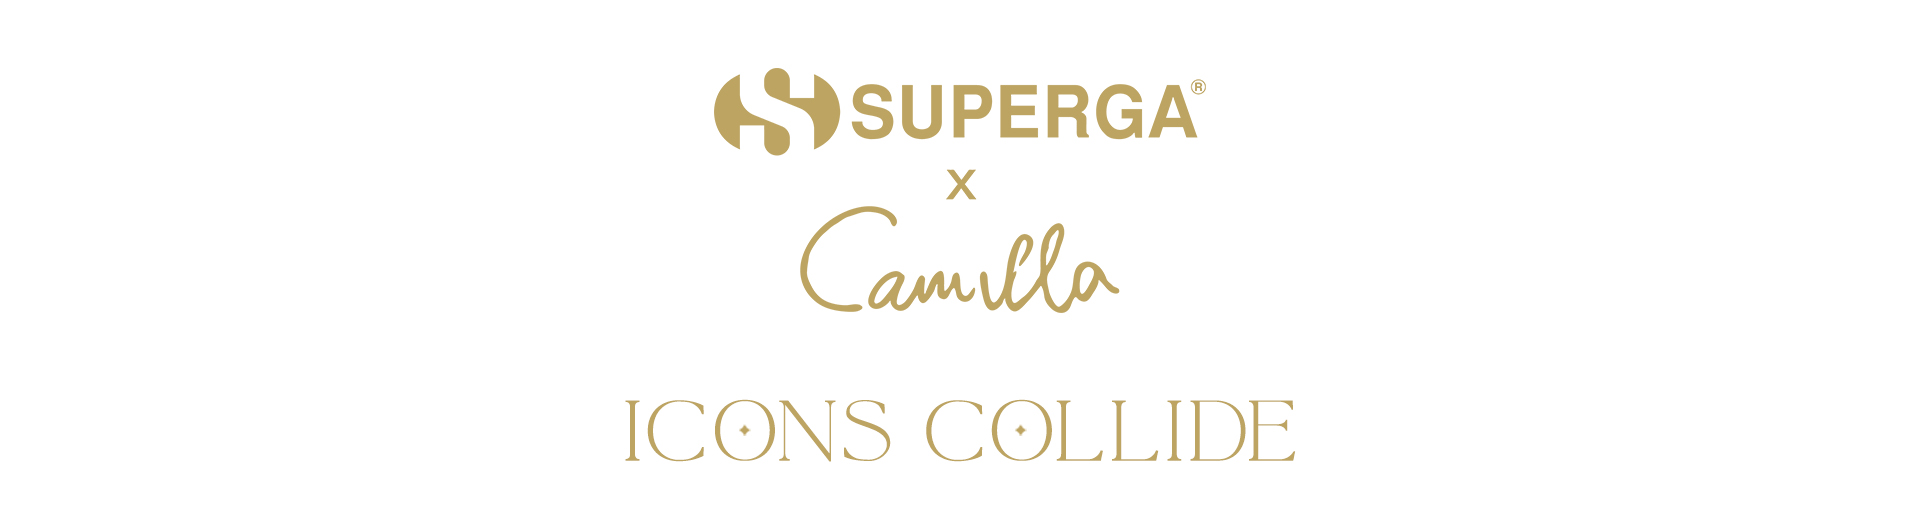 Superga X Camilla ICONS COLLIDE